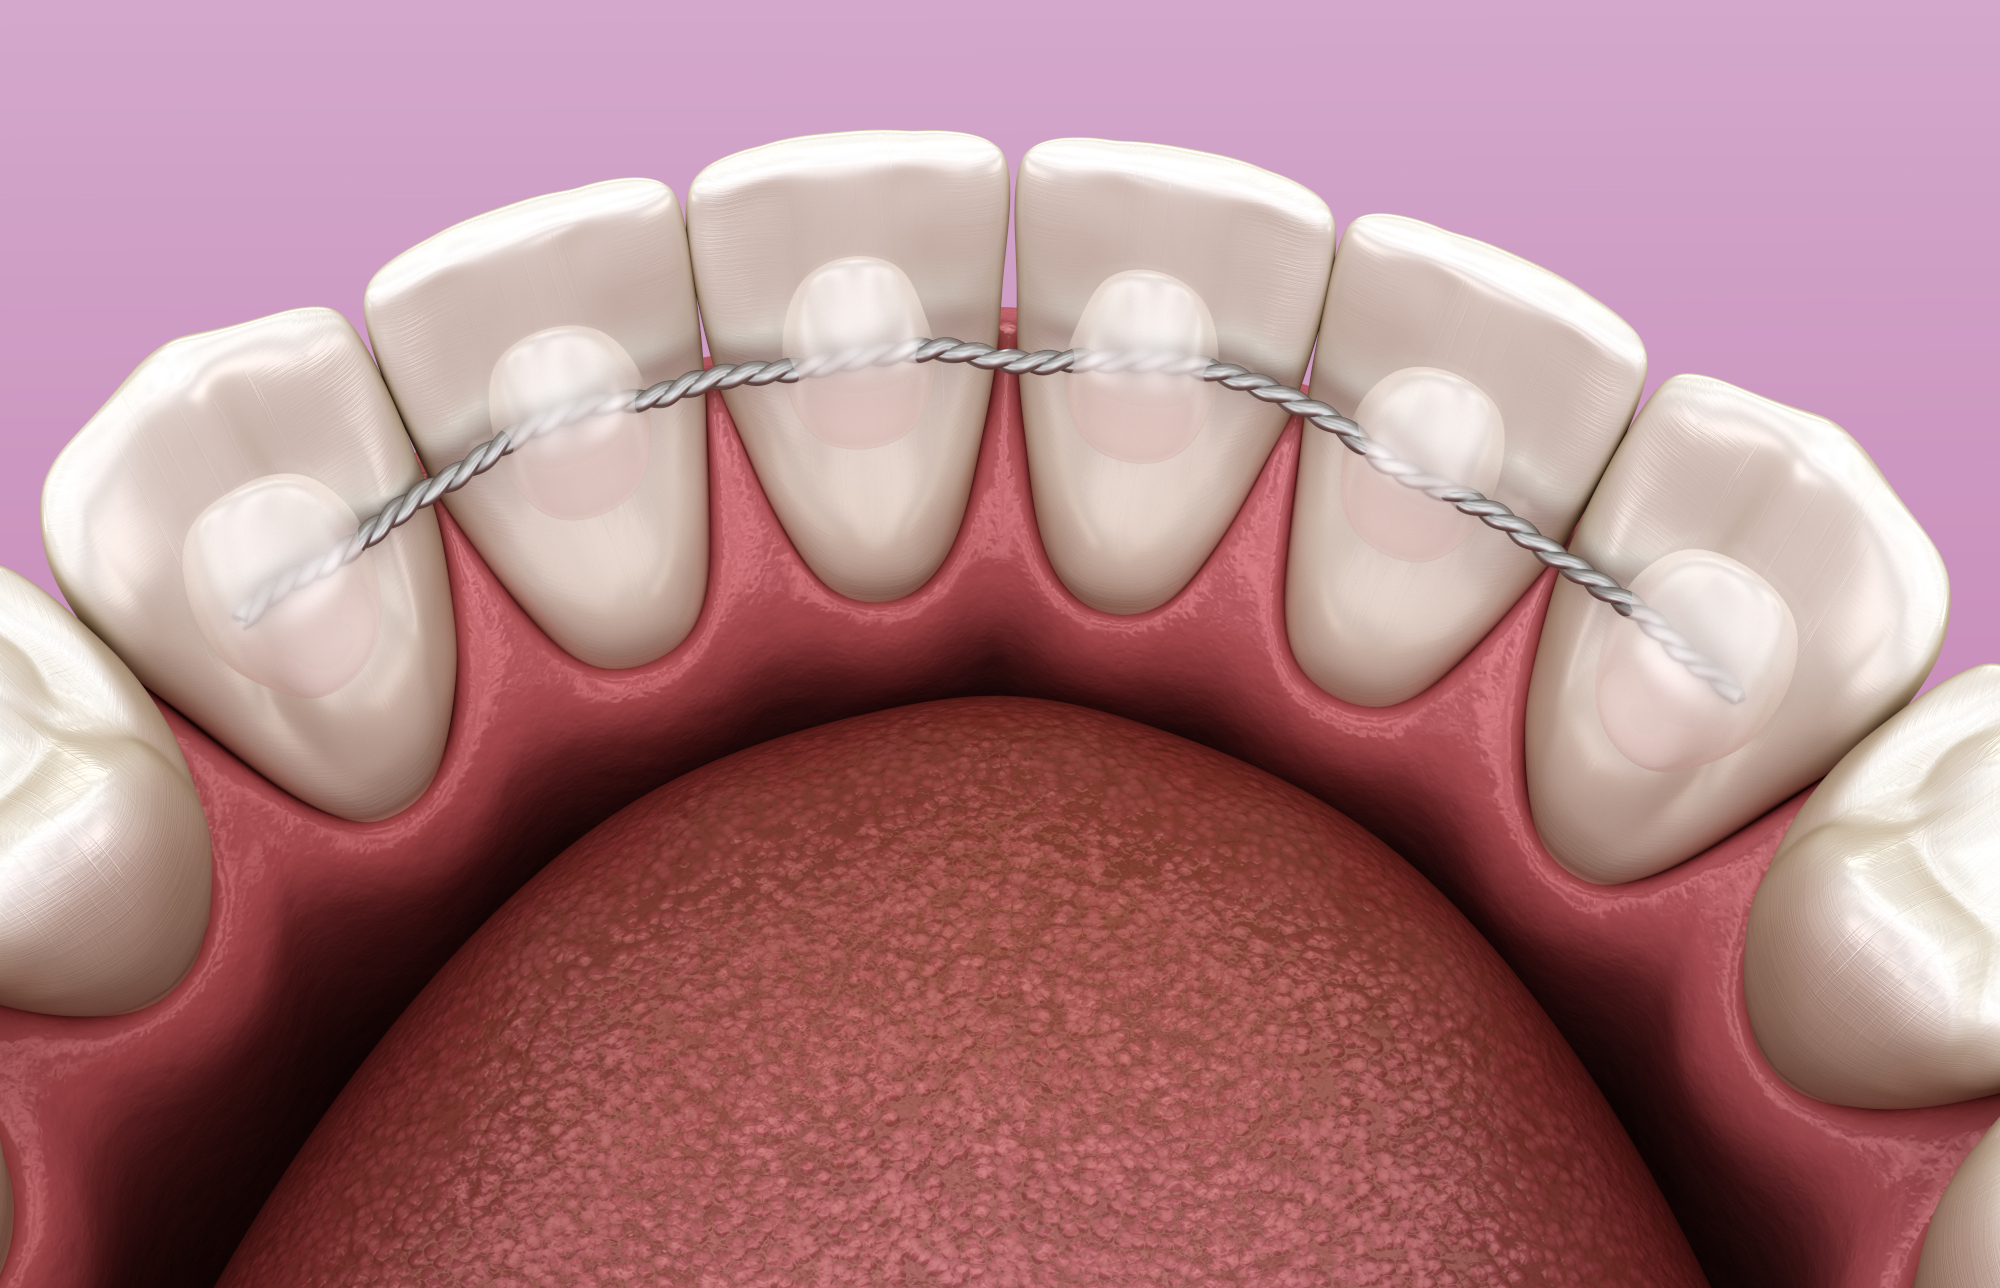 Le dispositif de contention fixe le plus courant est un fin fil métallique collé sur la face linguale des dents antérieures